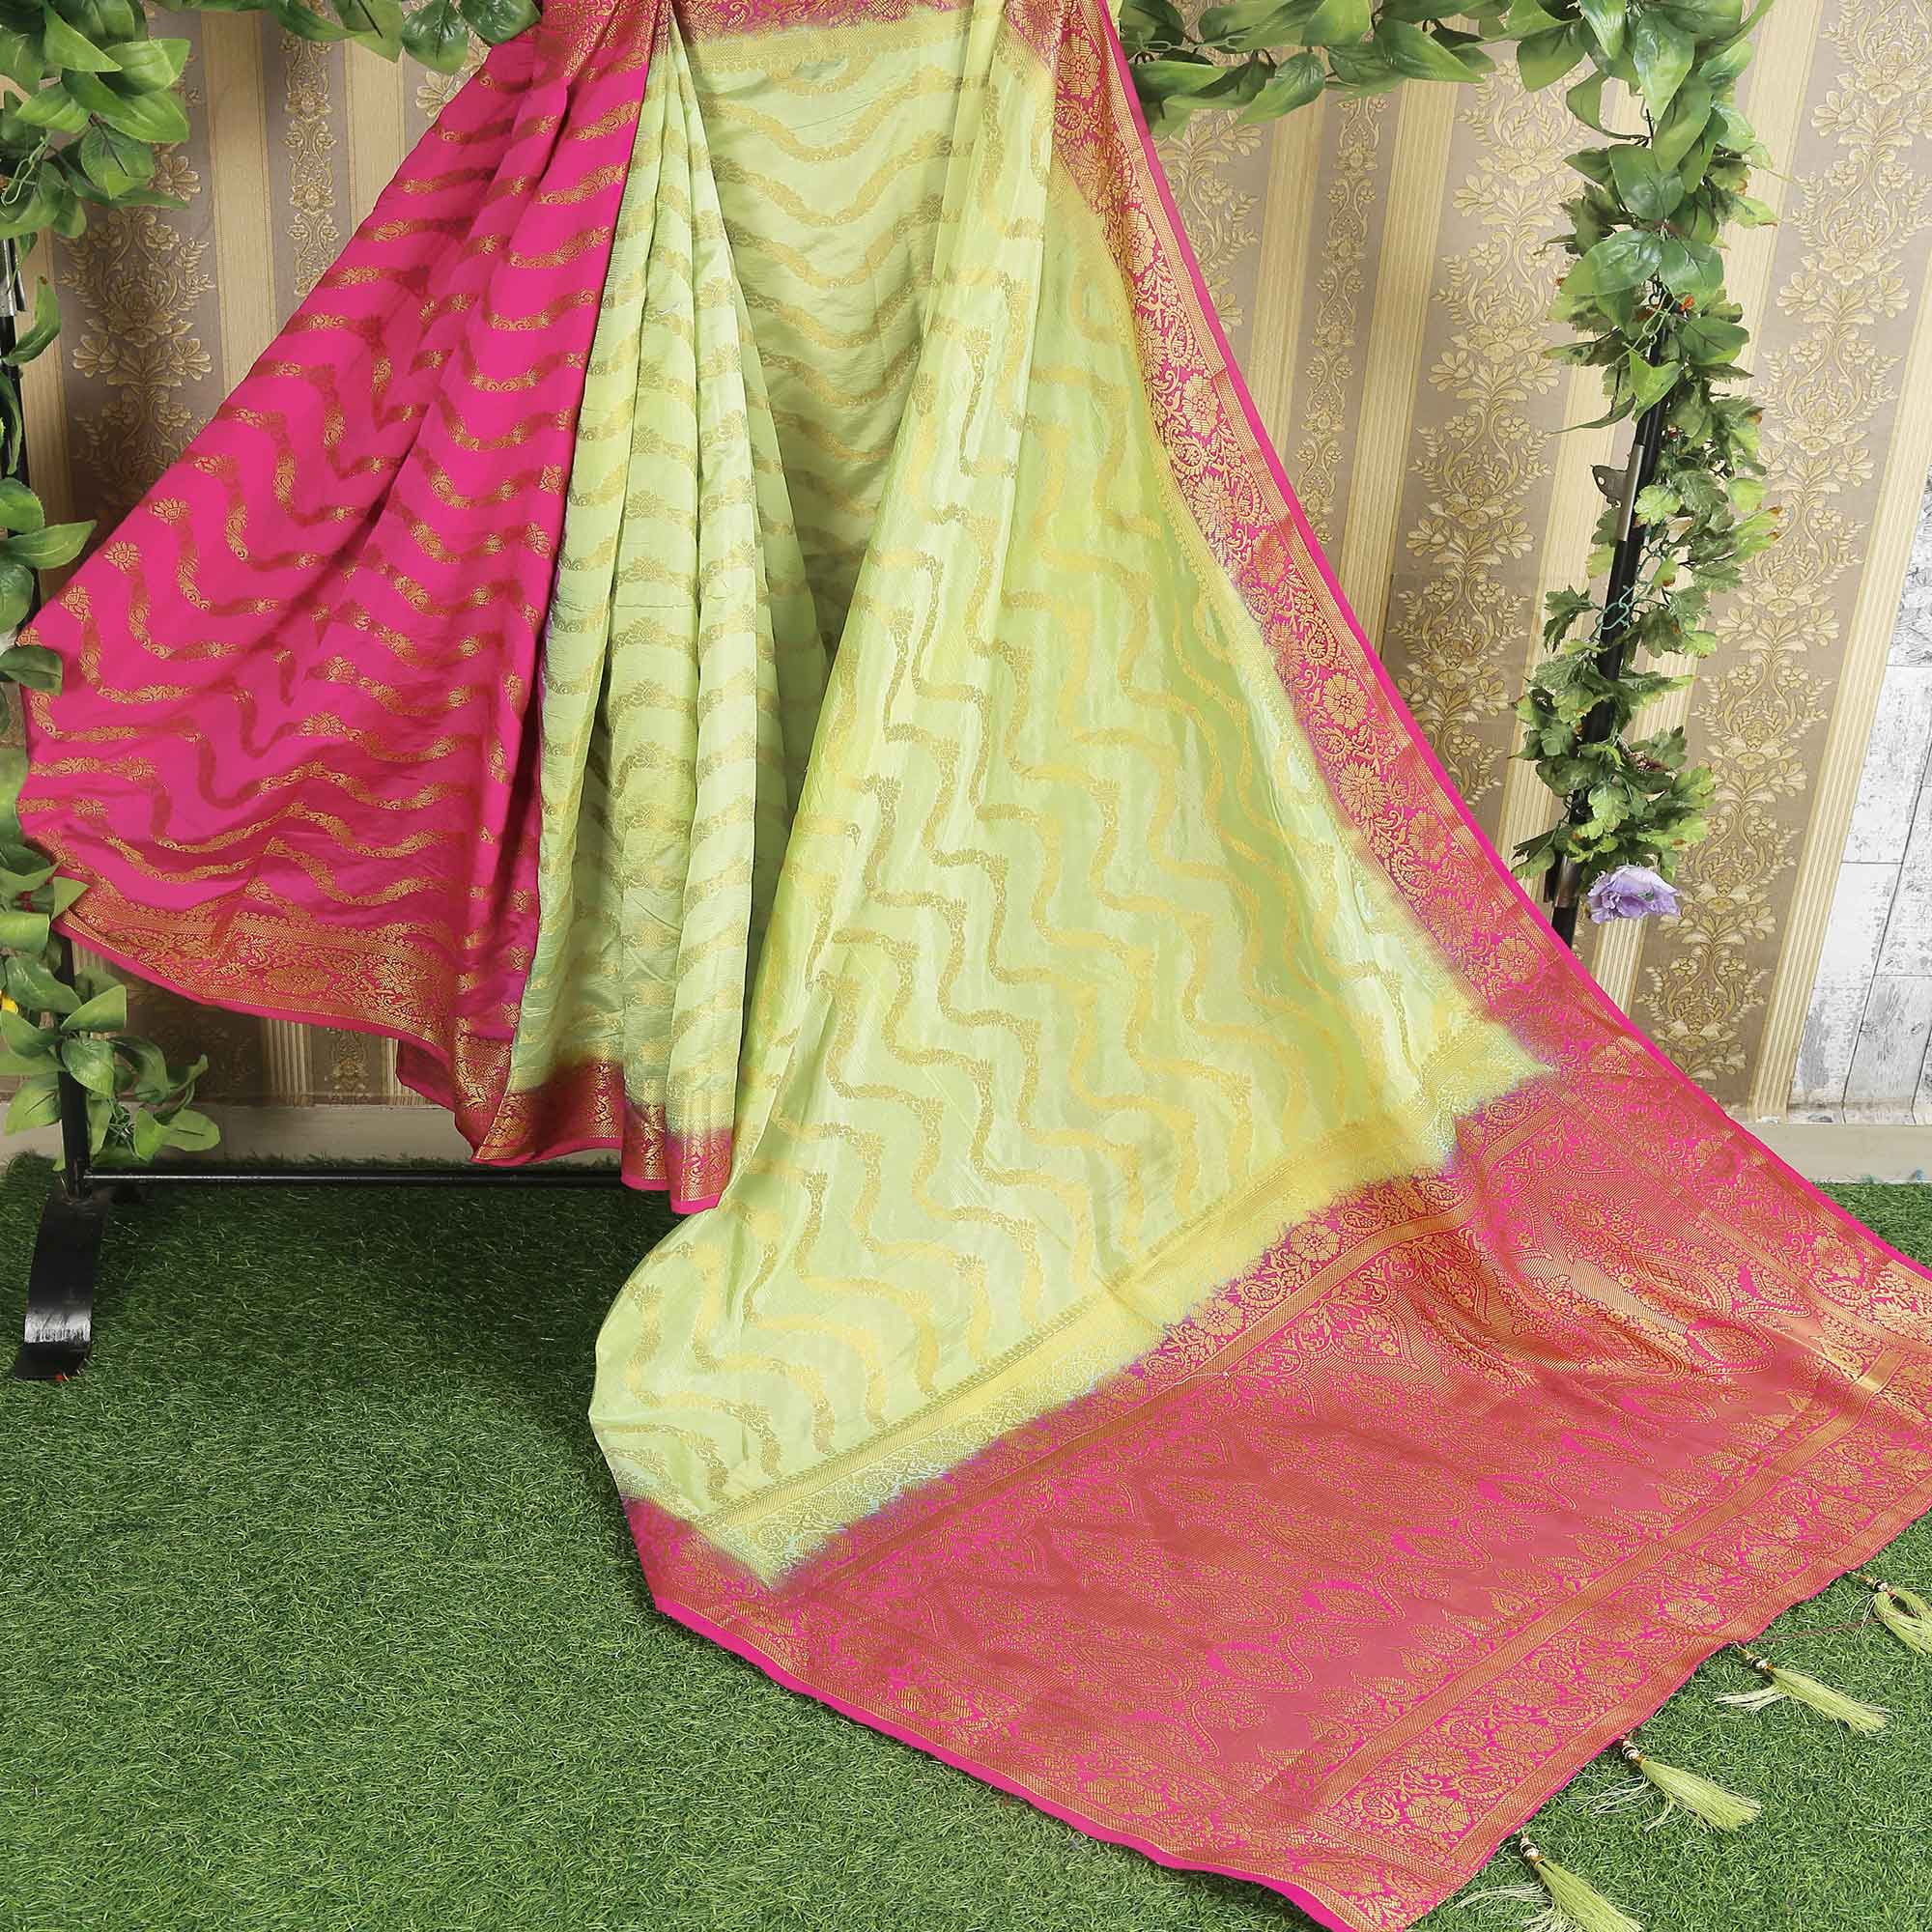 Green Floral Woven Banarasi Silk Saree